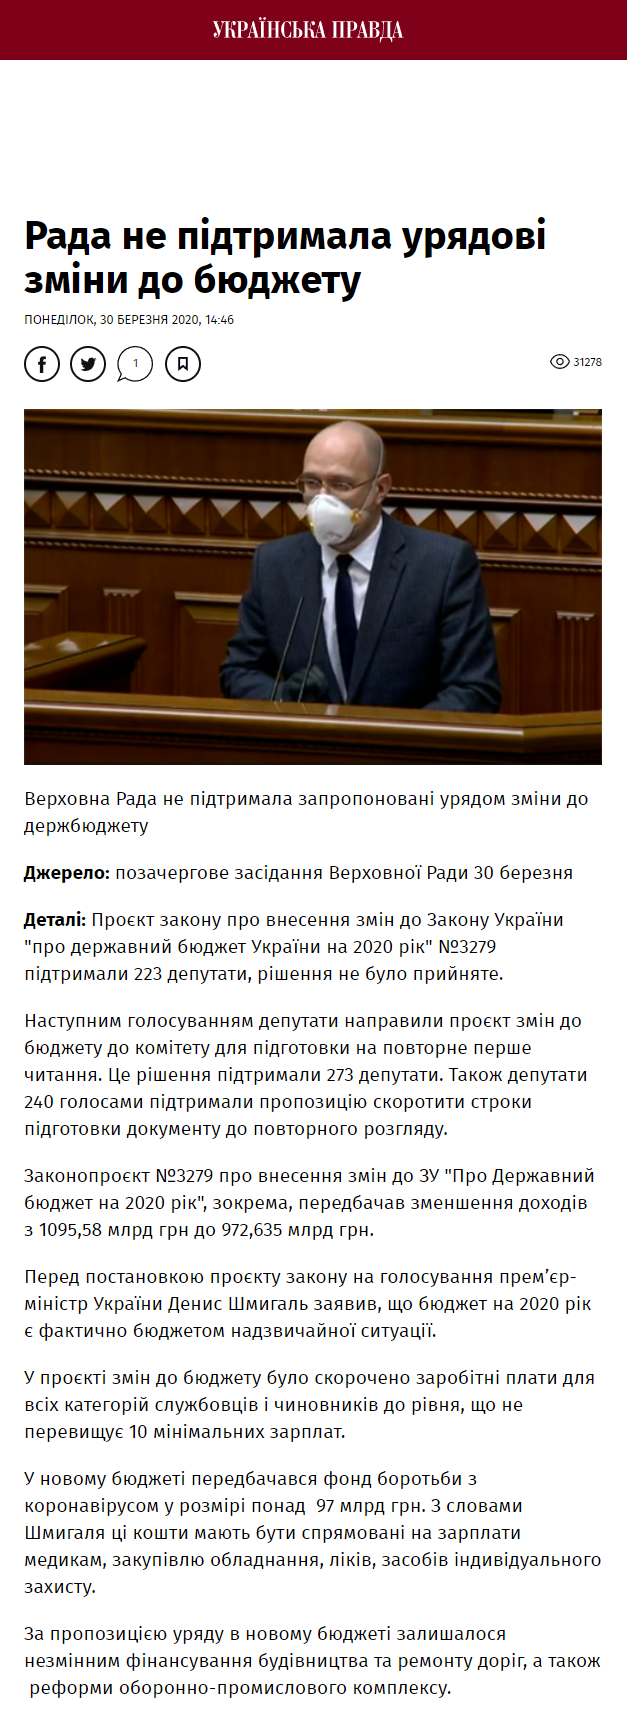 https://www.pravda.com.ua/news/2020/03/30/7245730/